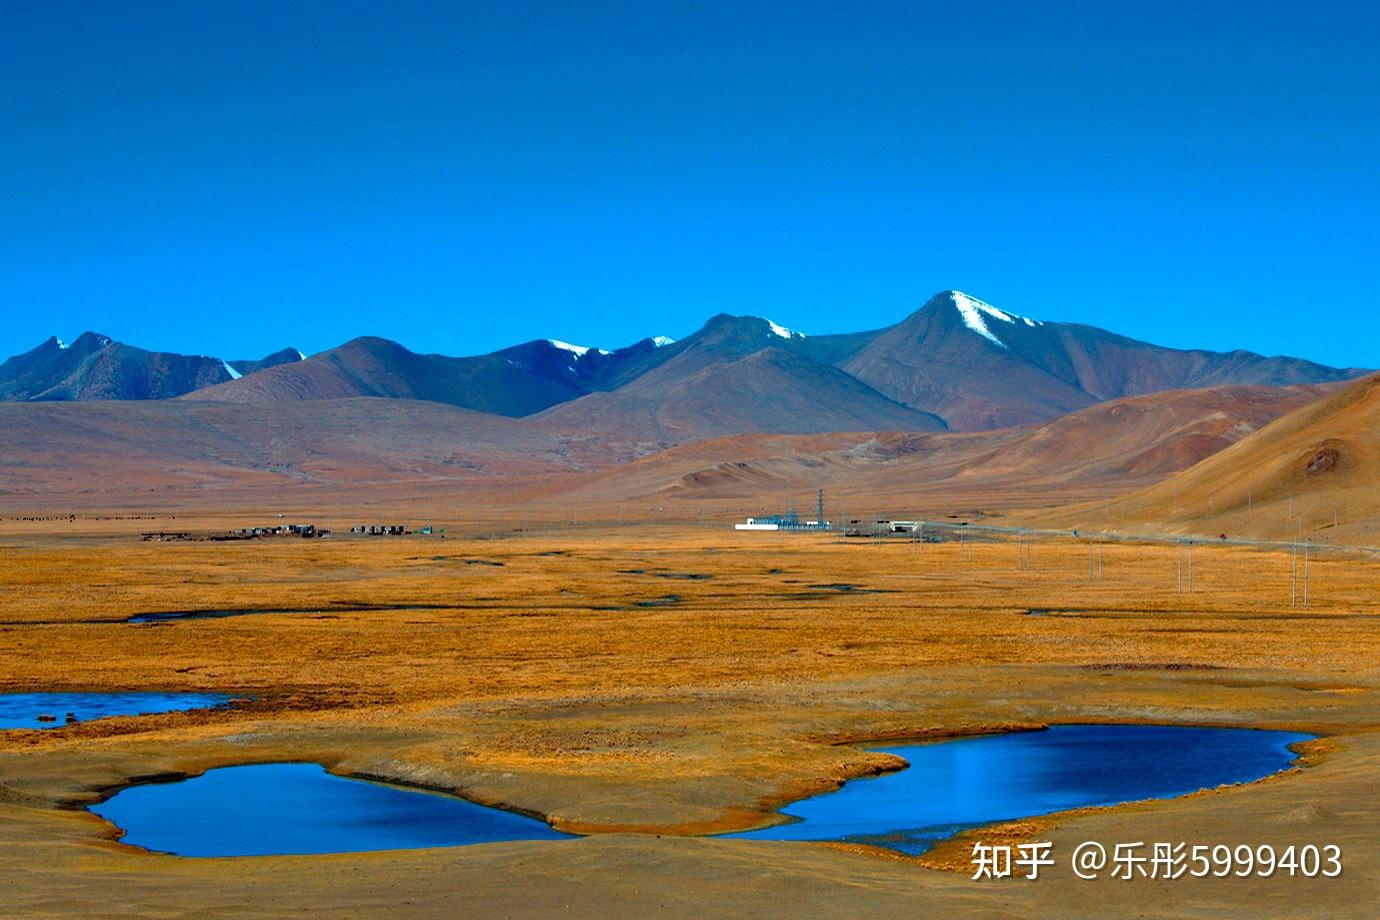 【西藏湖四大圣湖】到西藏旅游不能错过这10大神山圣湖，你去过几处？最爱哪个景点？